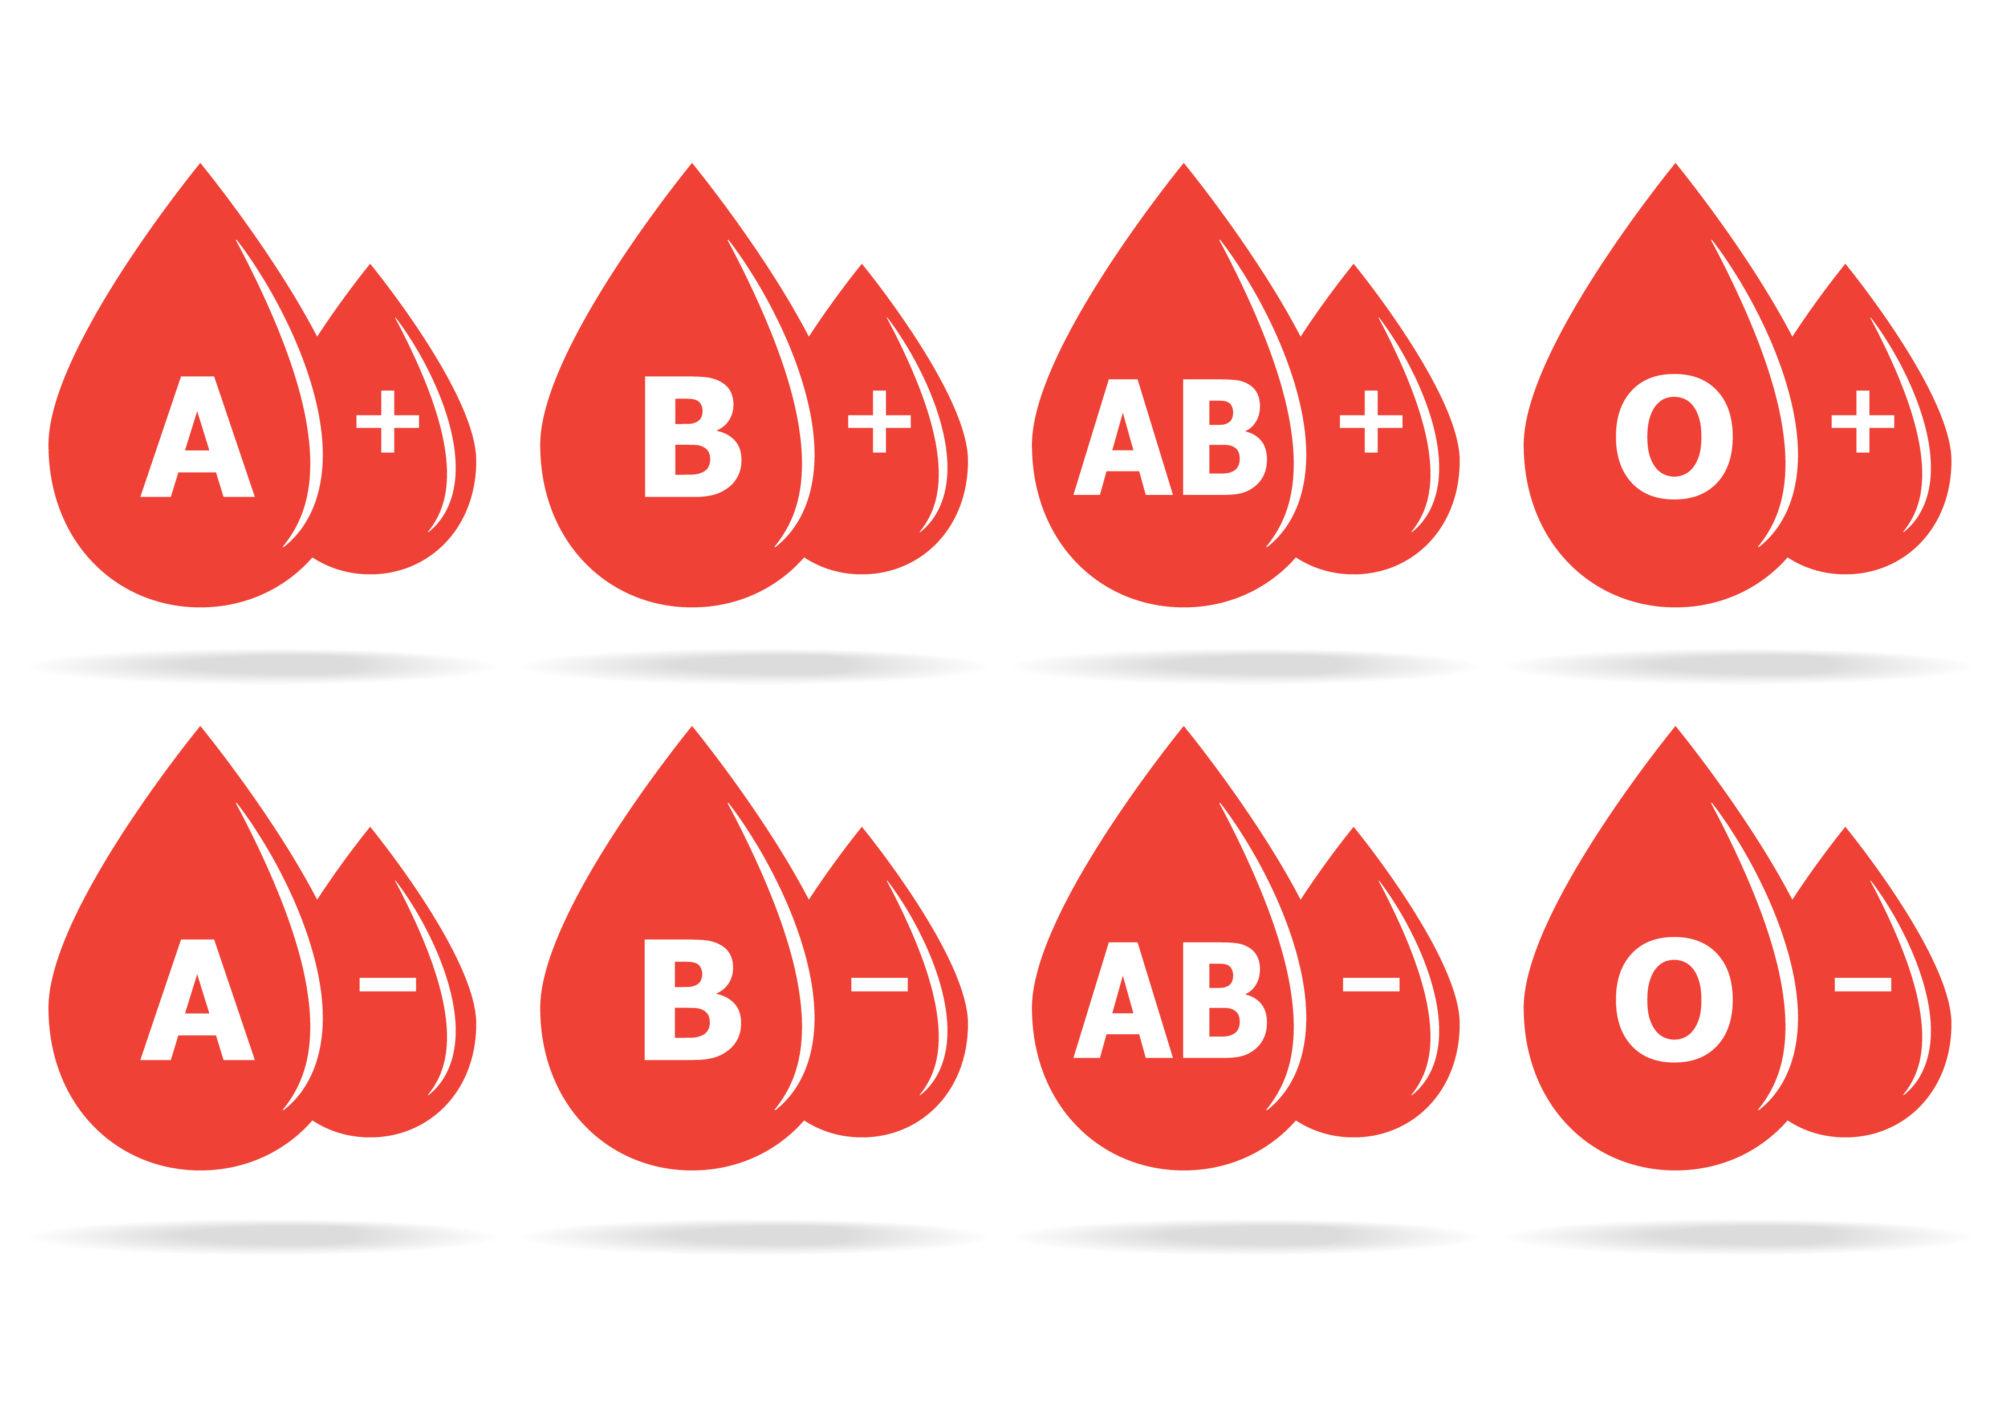 Krvne grupe su nasljedne - Avaz